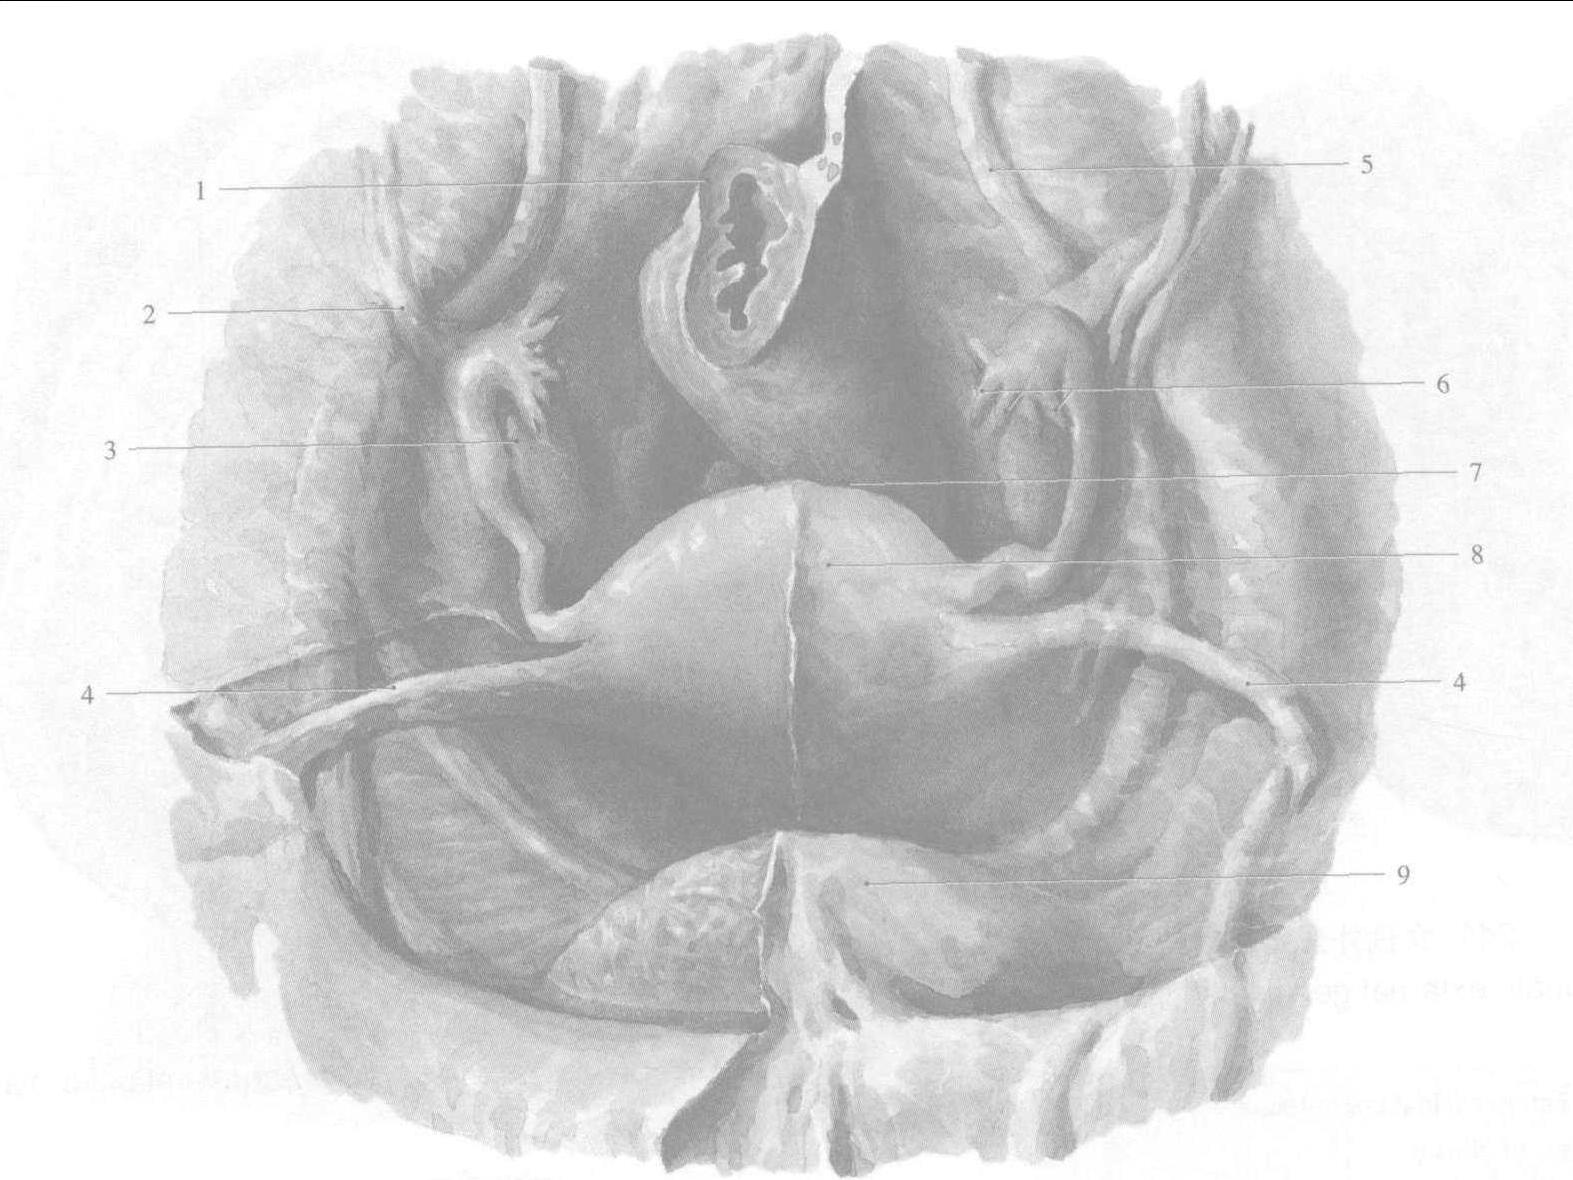 图3-3 盆腔冠状切面 (示意图)-妇产科临床解剖学-医学